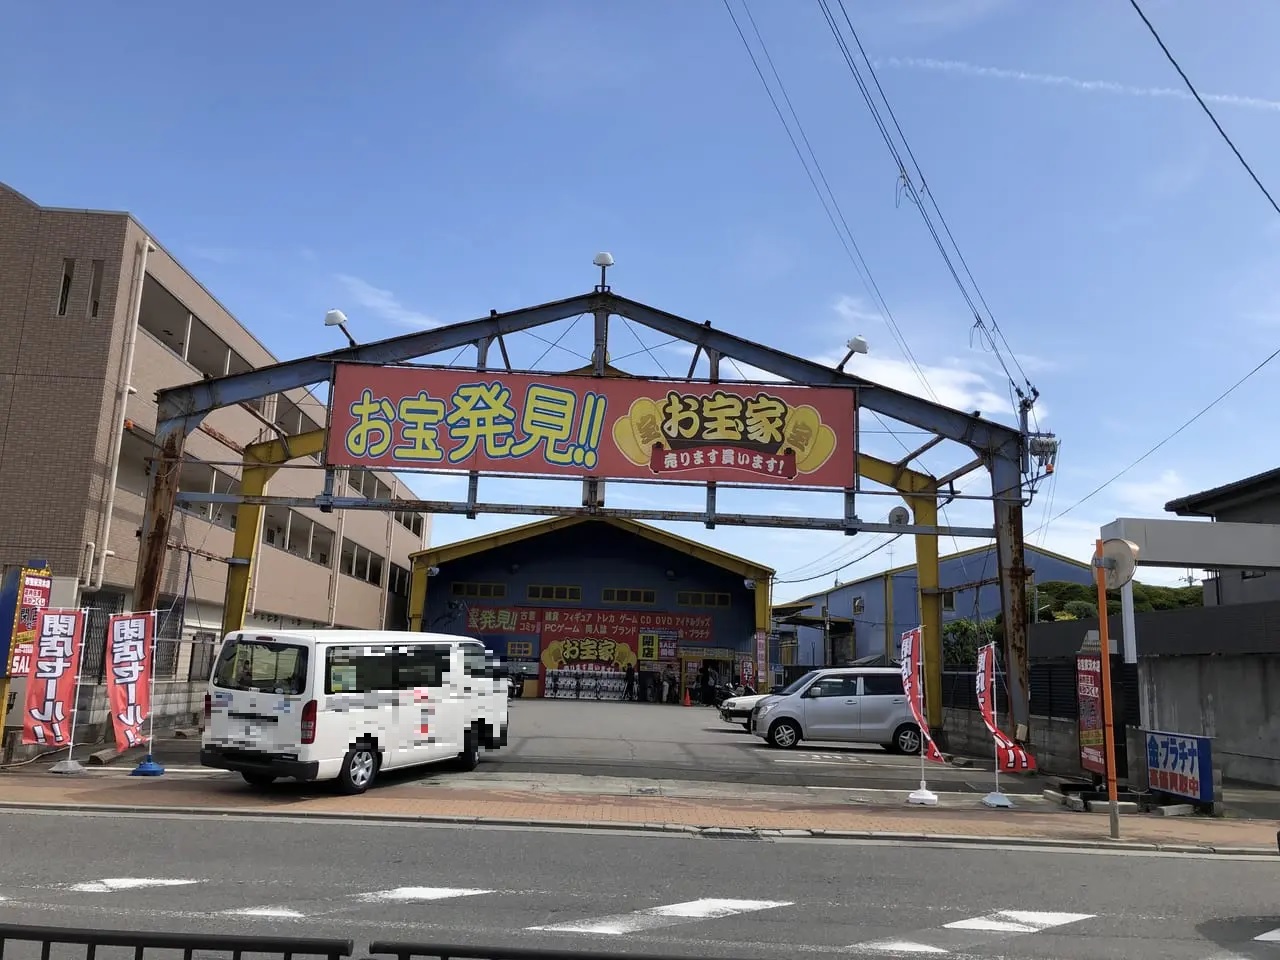 茨木市 お宝家が閉店します 全品30 オフの閉店セールでお宝を探せ 号外net 茨木